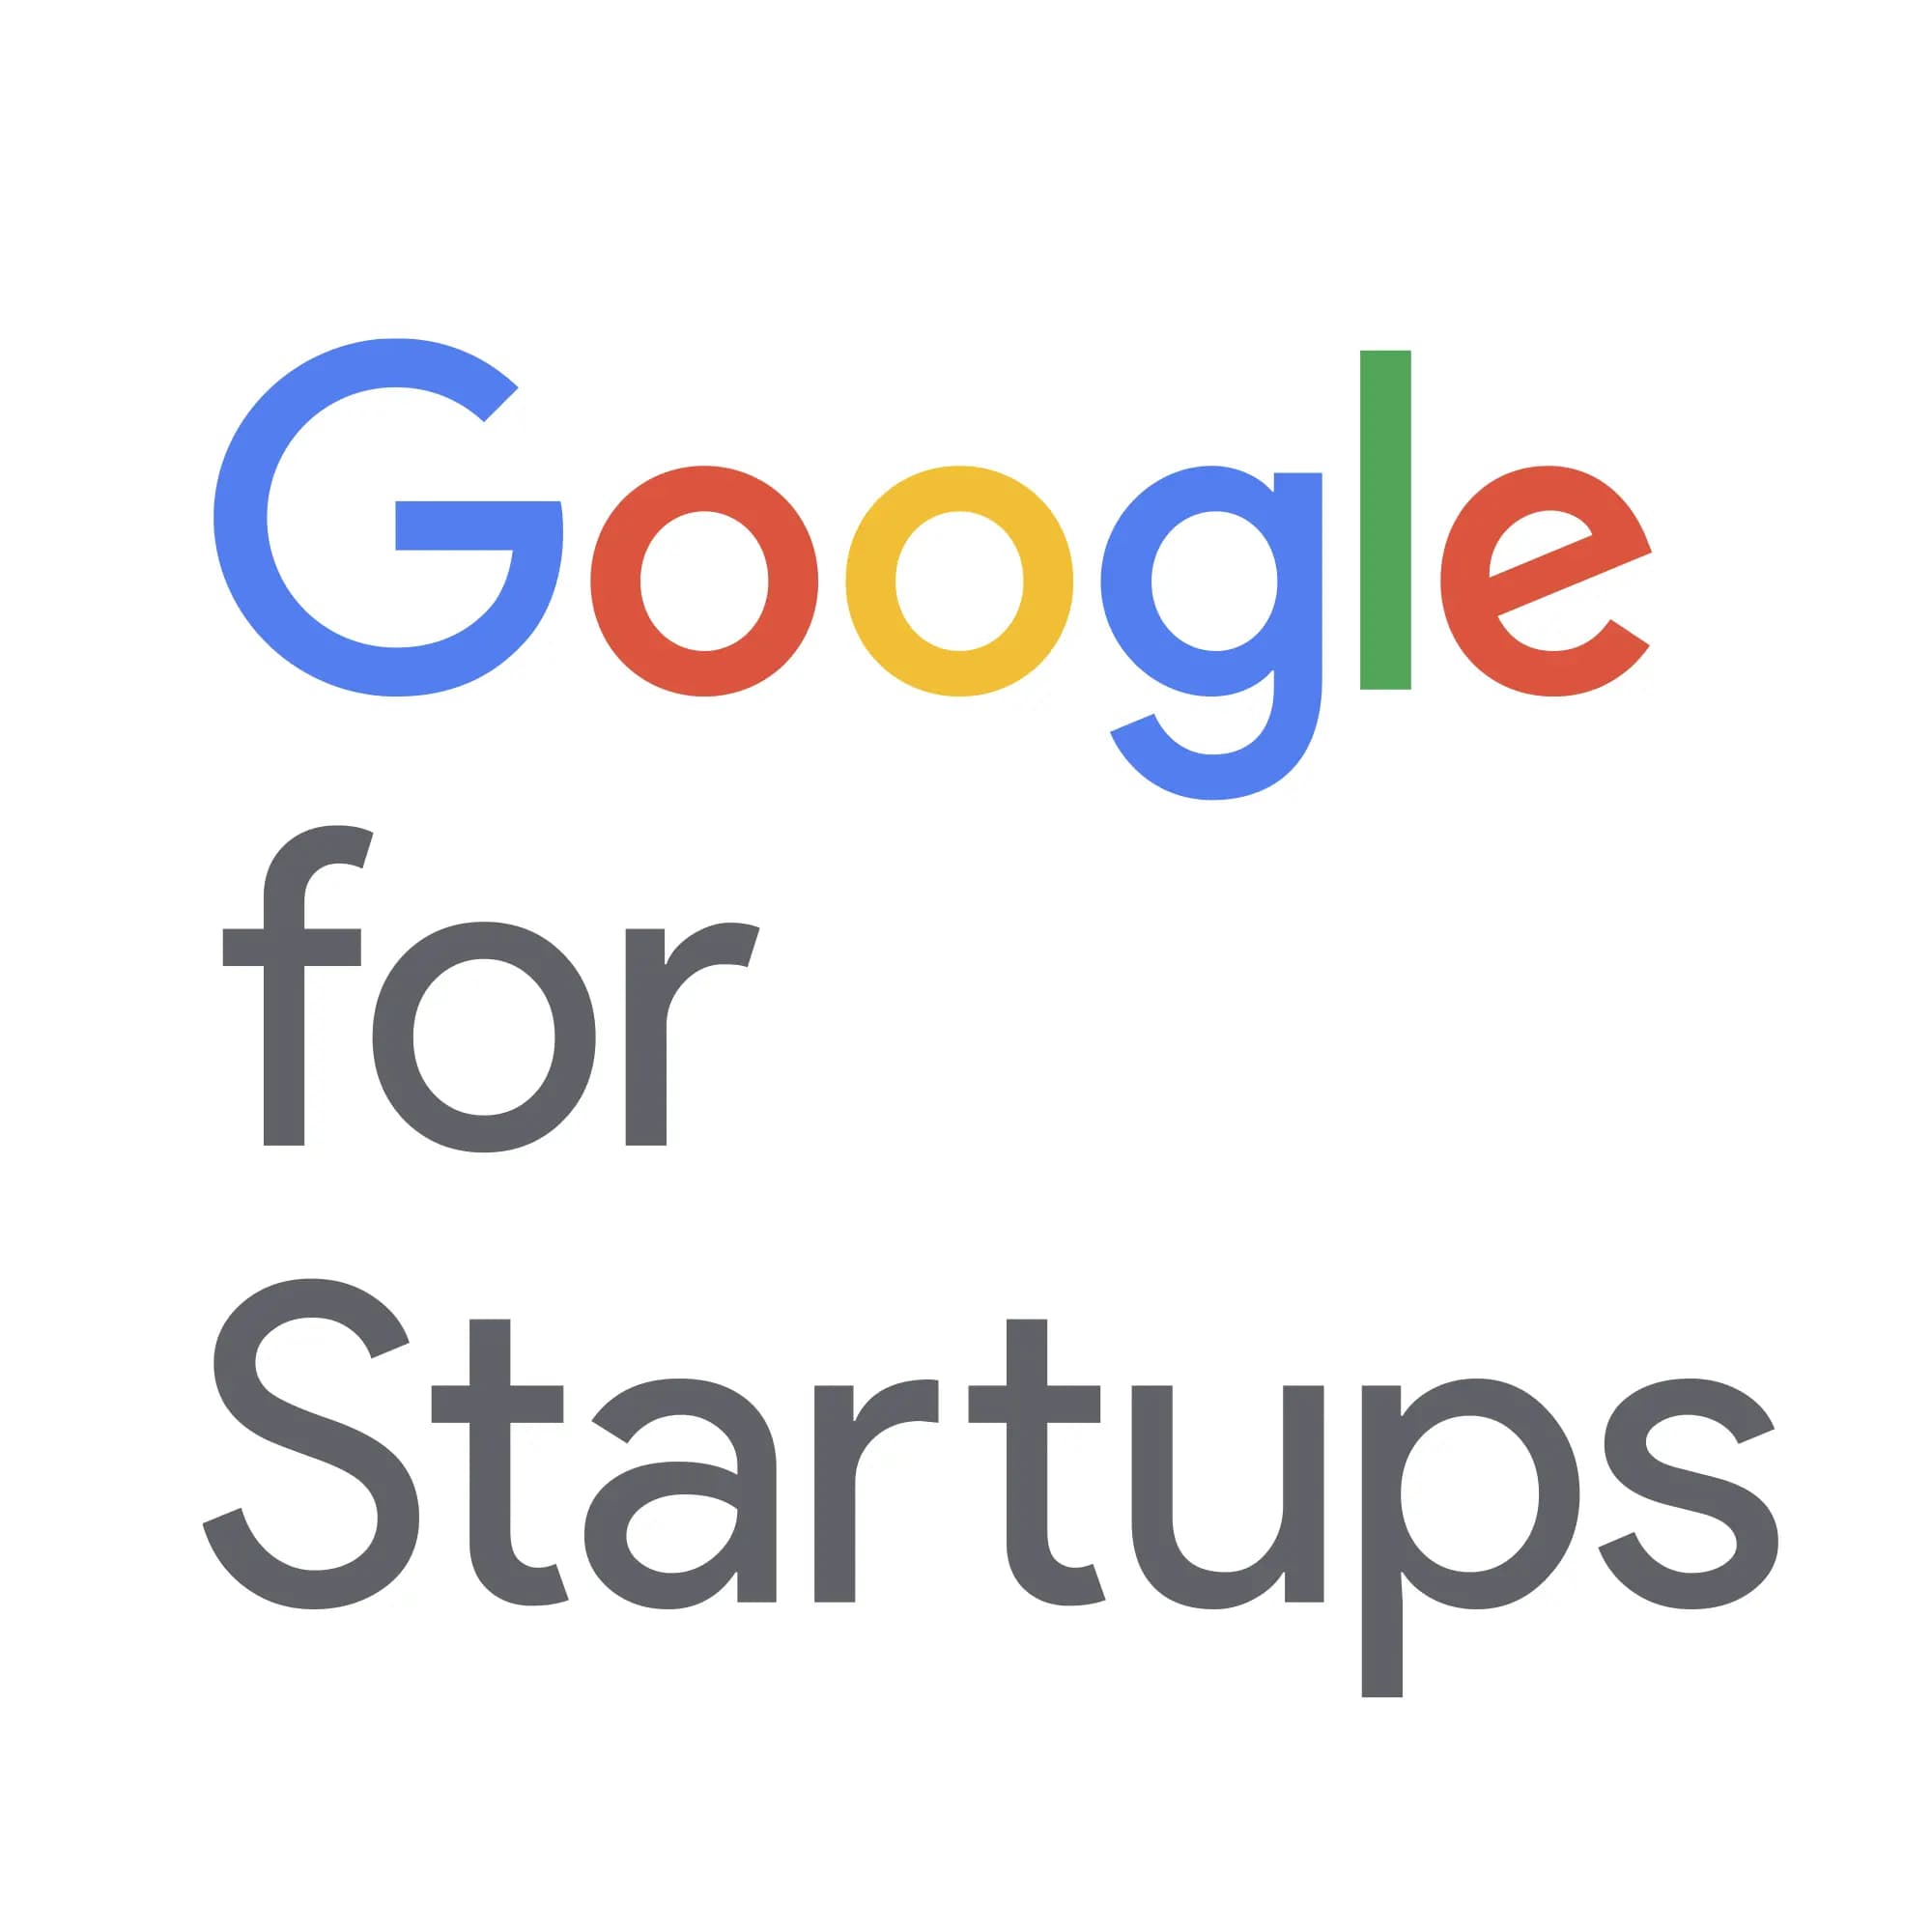 google for startups image